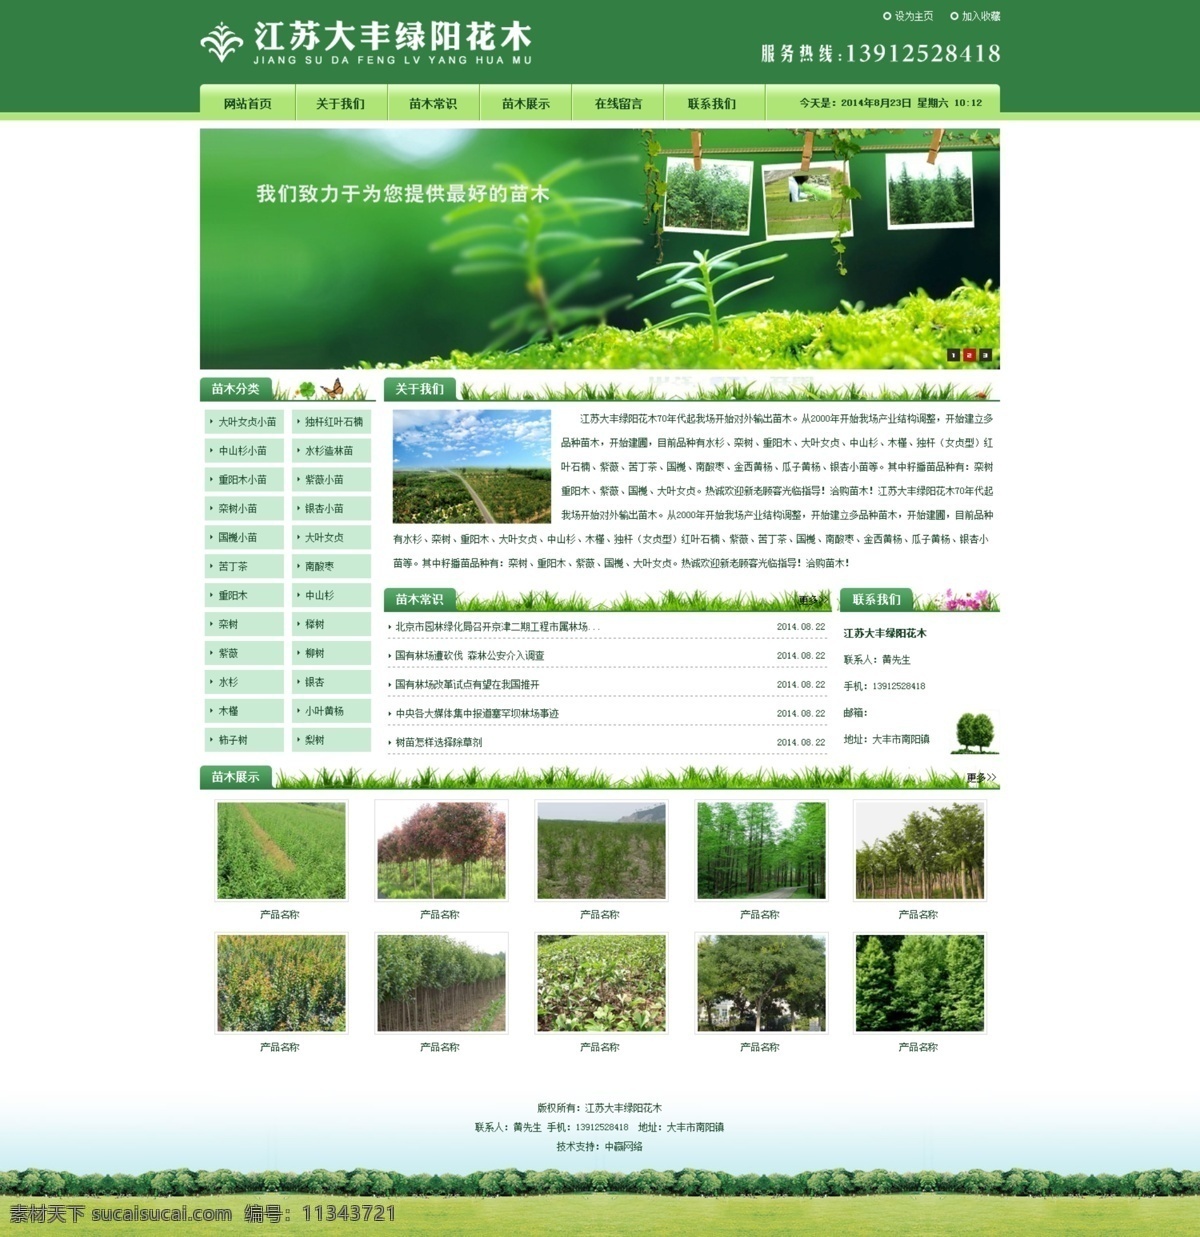 苗木 网站 模板 psd模板 花木 绿色网站 网站psd 中文模板 模版 web 界面设计 网页素材 其他网页素材